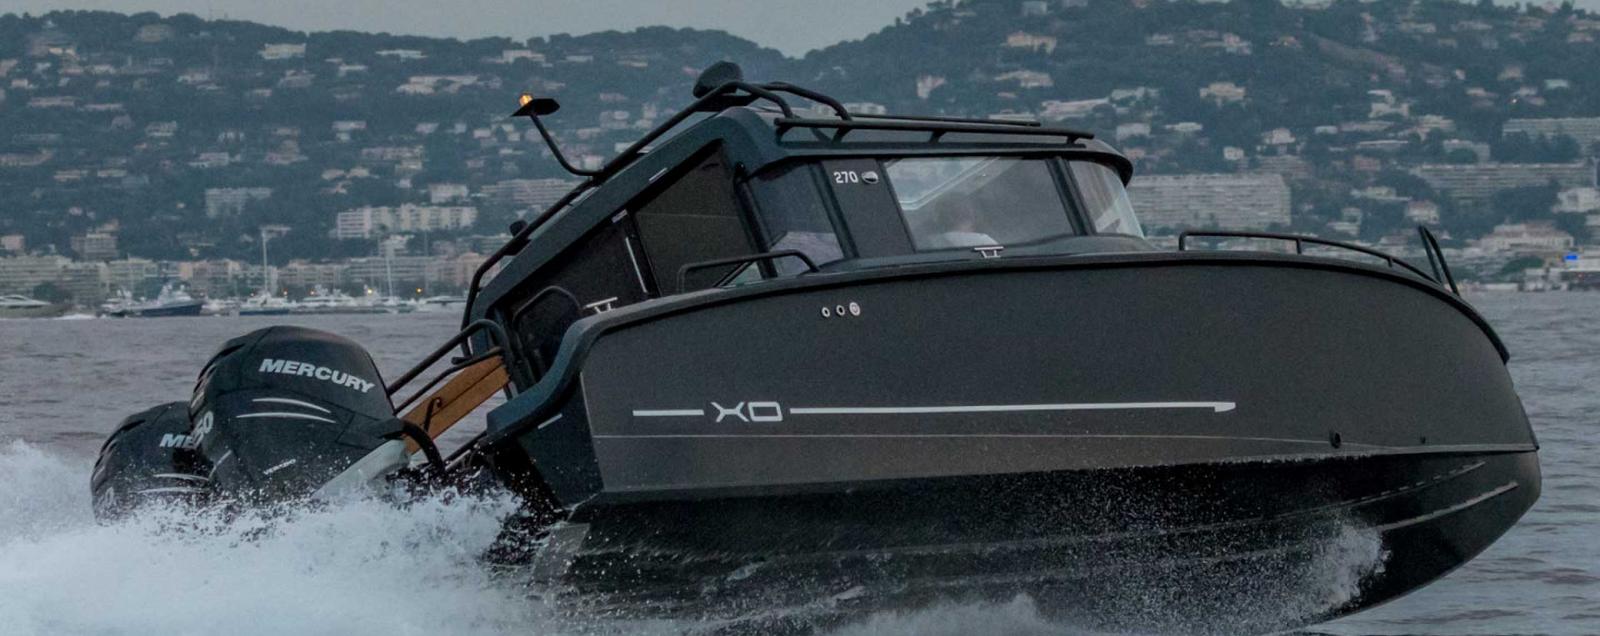 XO Boats France